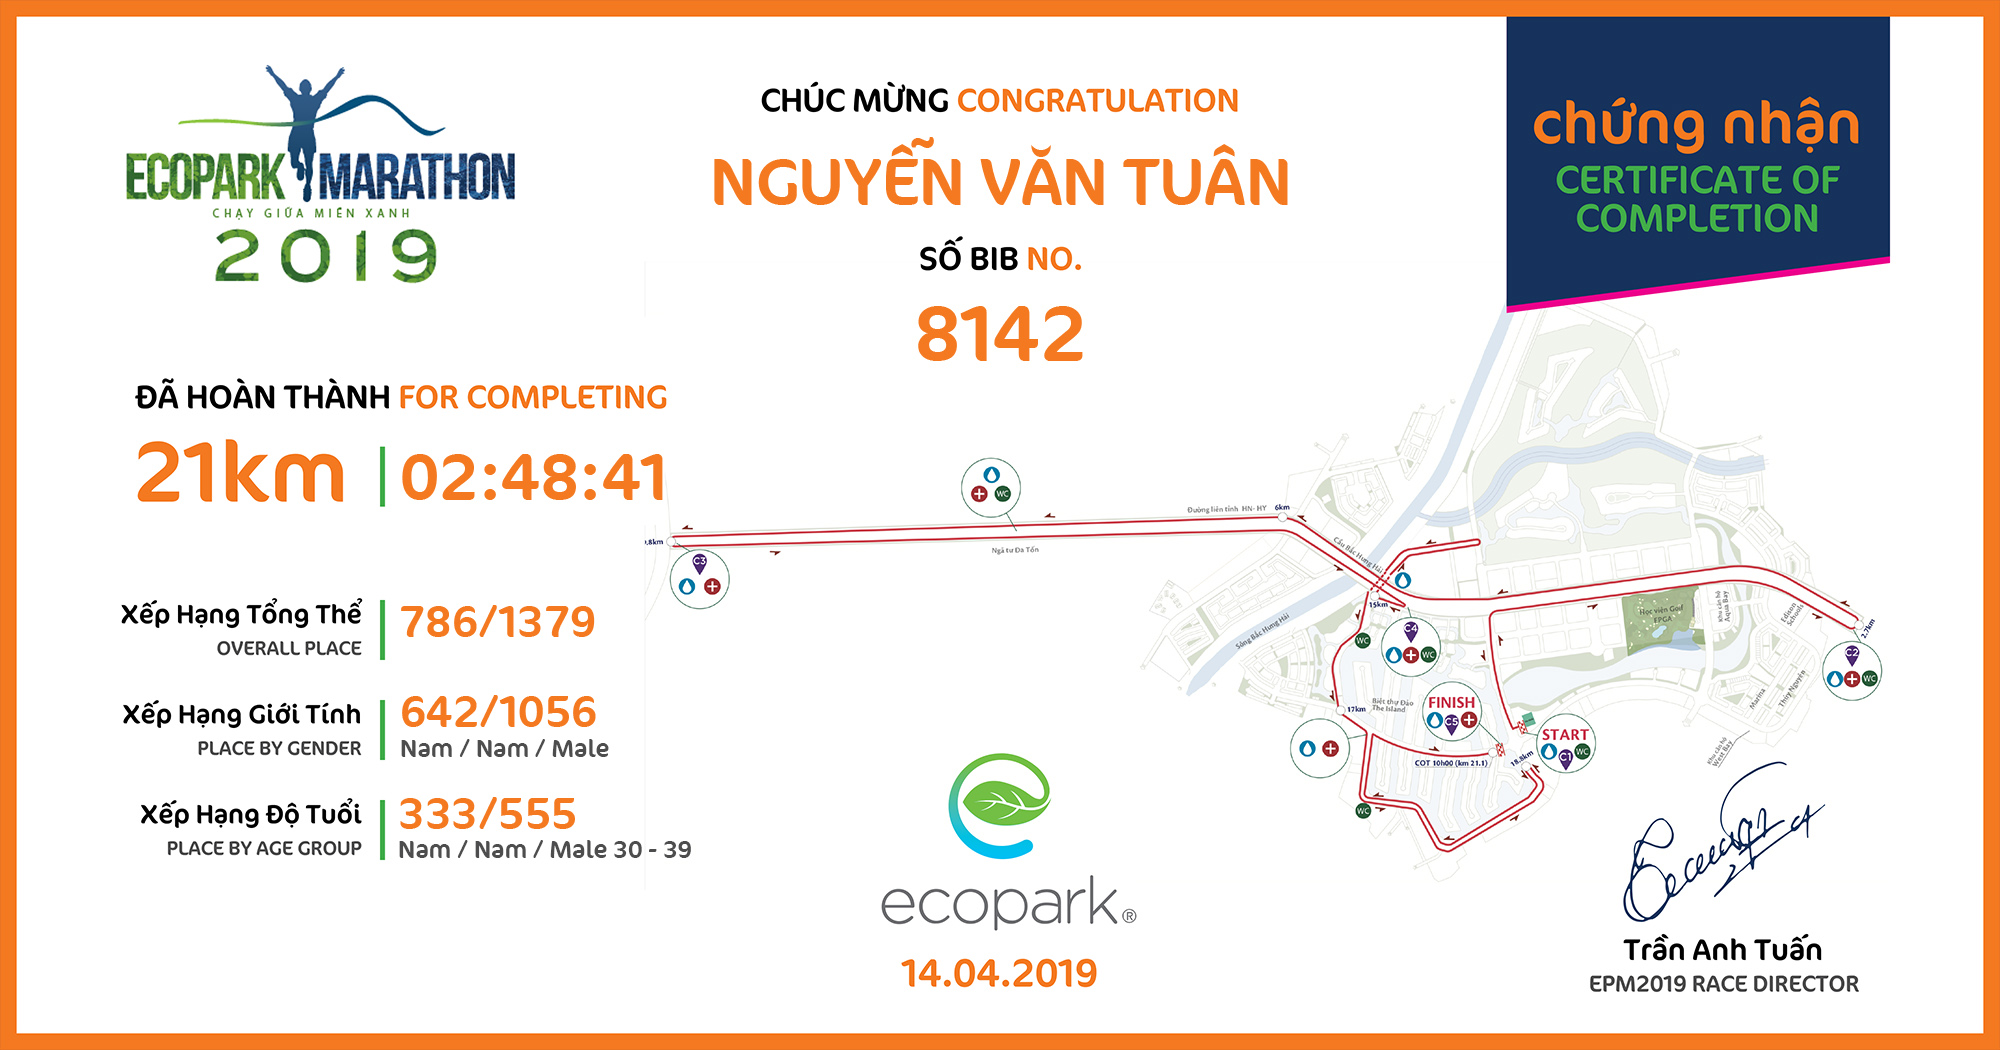 8142 - Nguyễn Văn Tuân